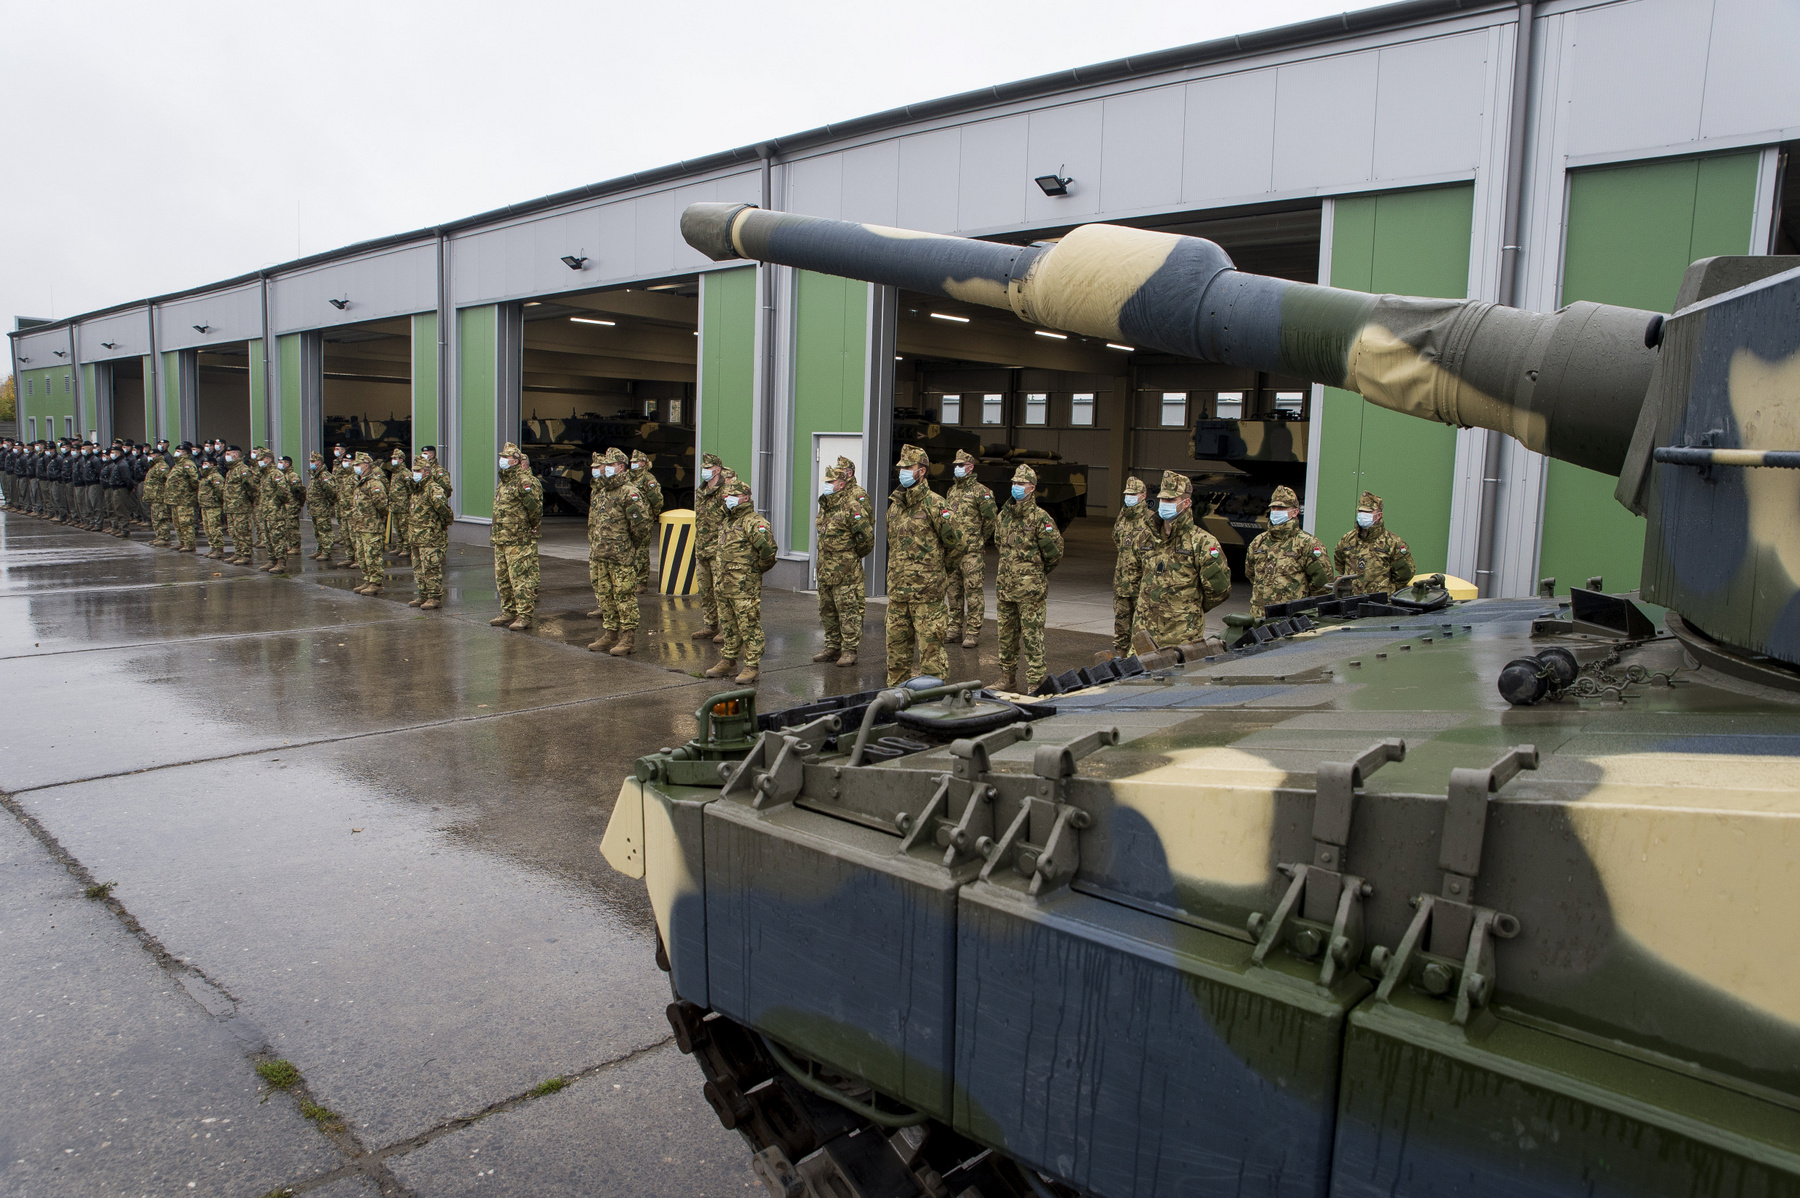 Németh Szilárd a Honvédelmi Minisztérium (HM) parlamenti államtitkára az újonnan érkezett Leopard 2A4HU típusú harckocsik és az új hangárok átadásán a tatai MH 25. Klapka György Lövészdandár laktanyájában 2020. október 29-én.
